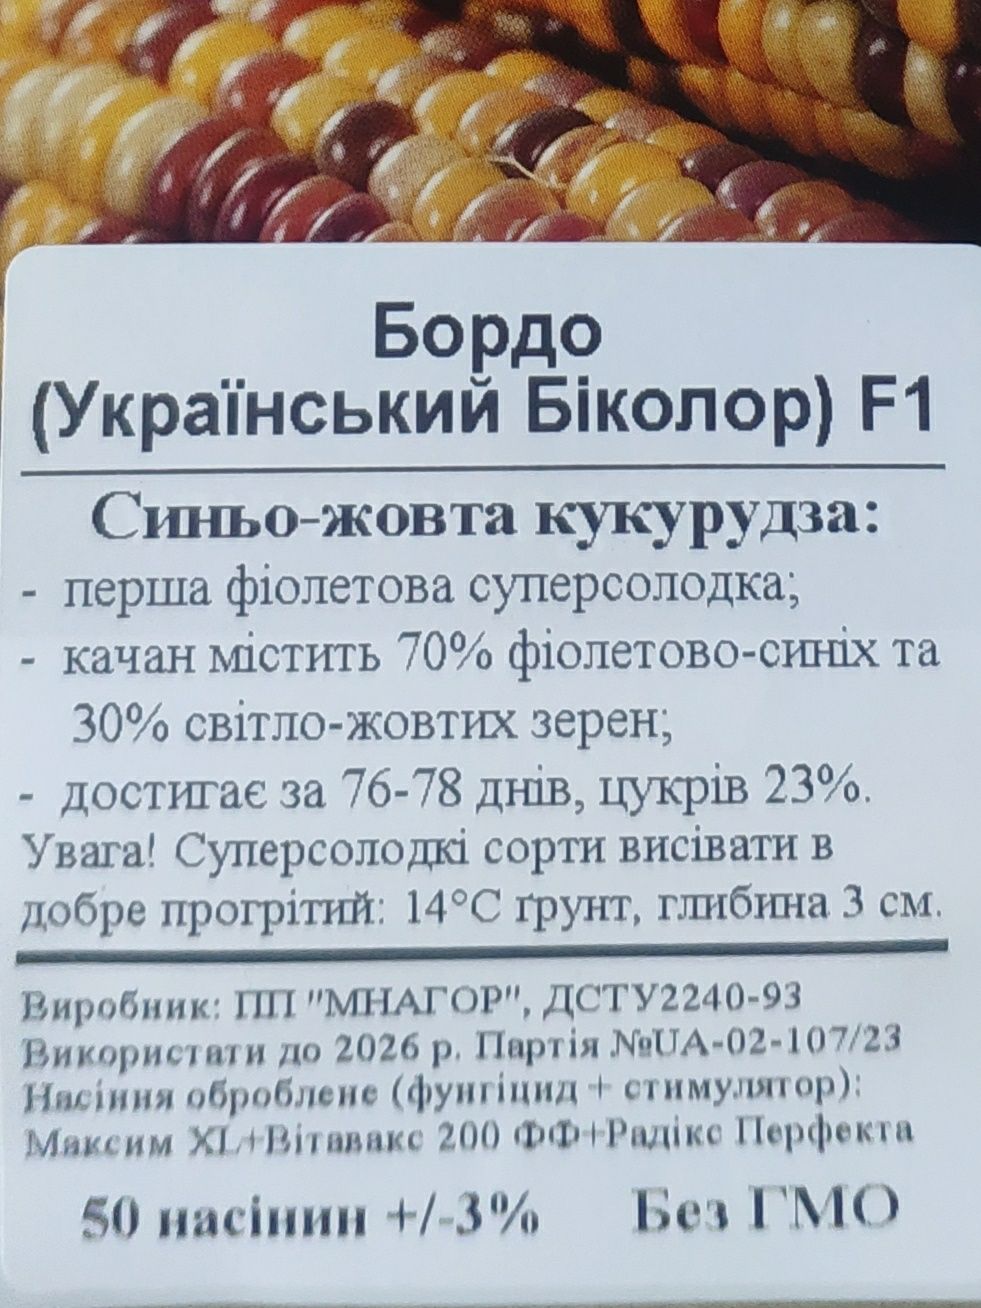 Насіння цукрової кукурудзи Бордо F1 (Український Біколор),50нас/уп.